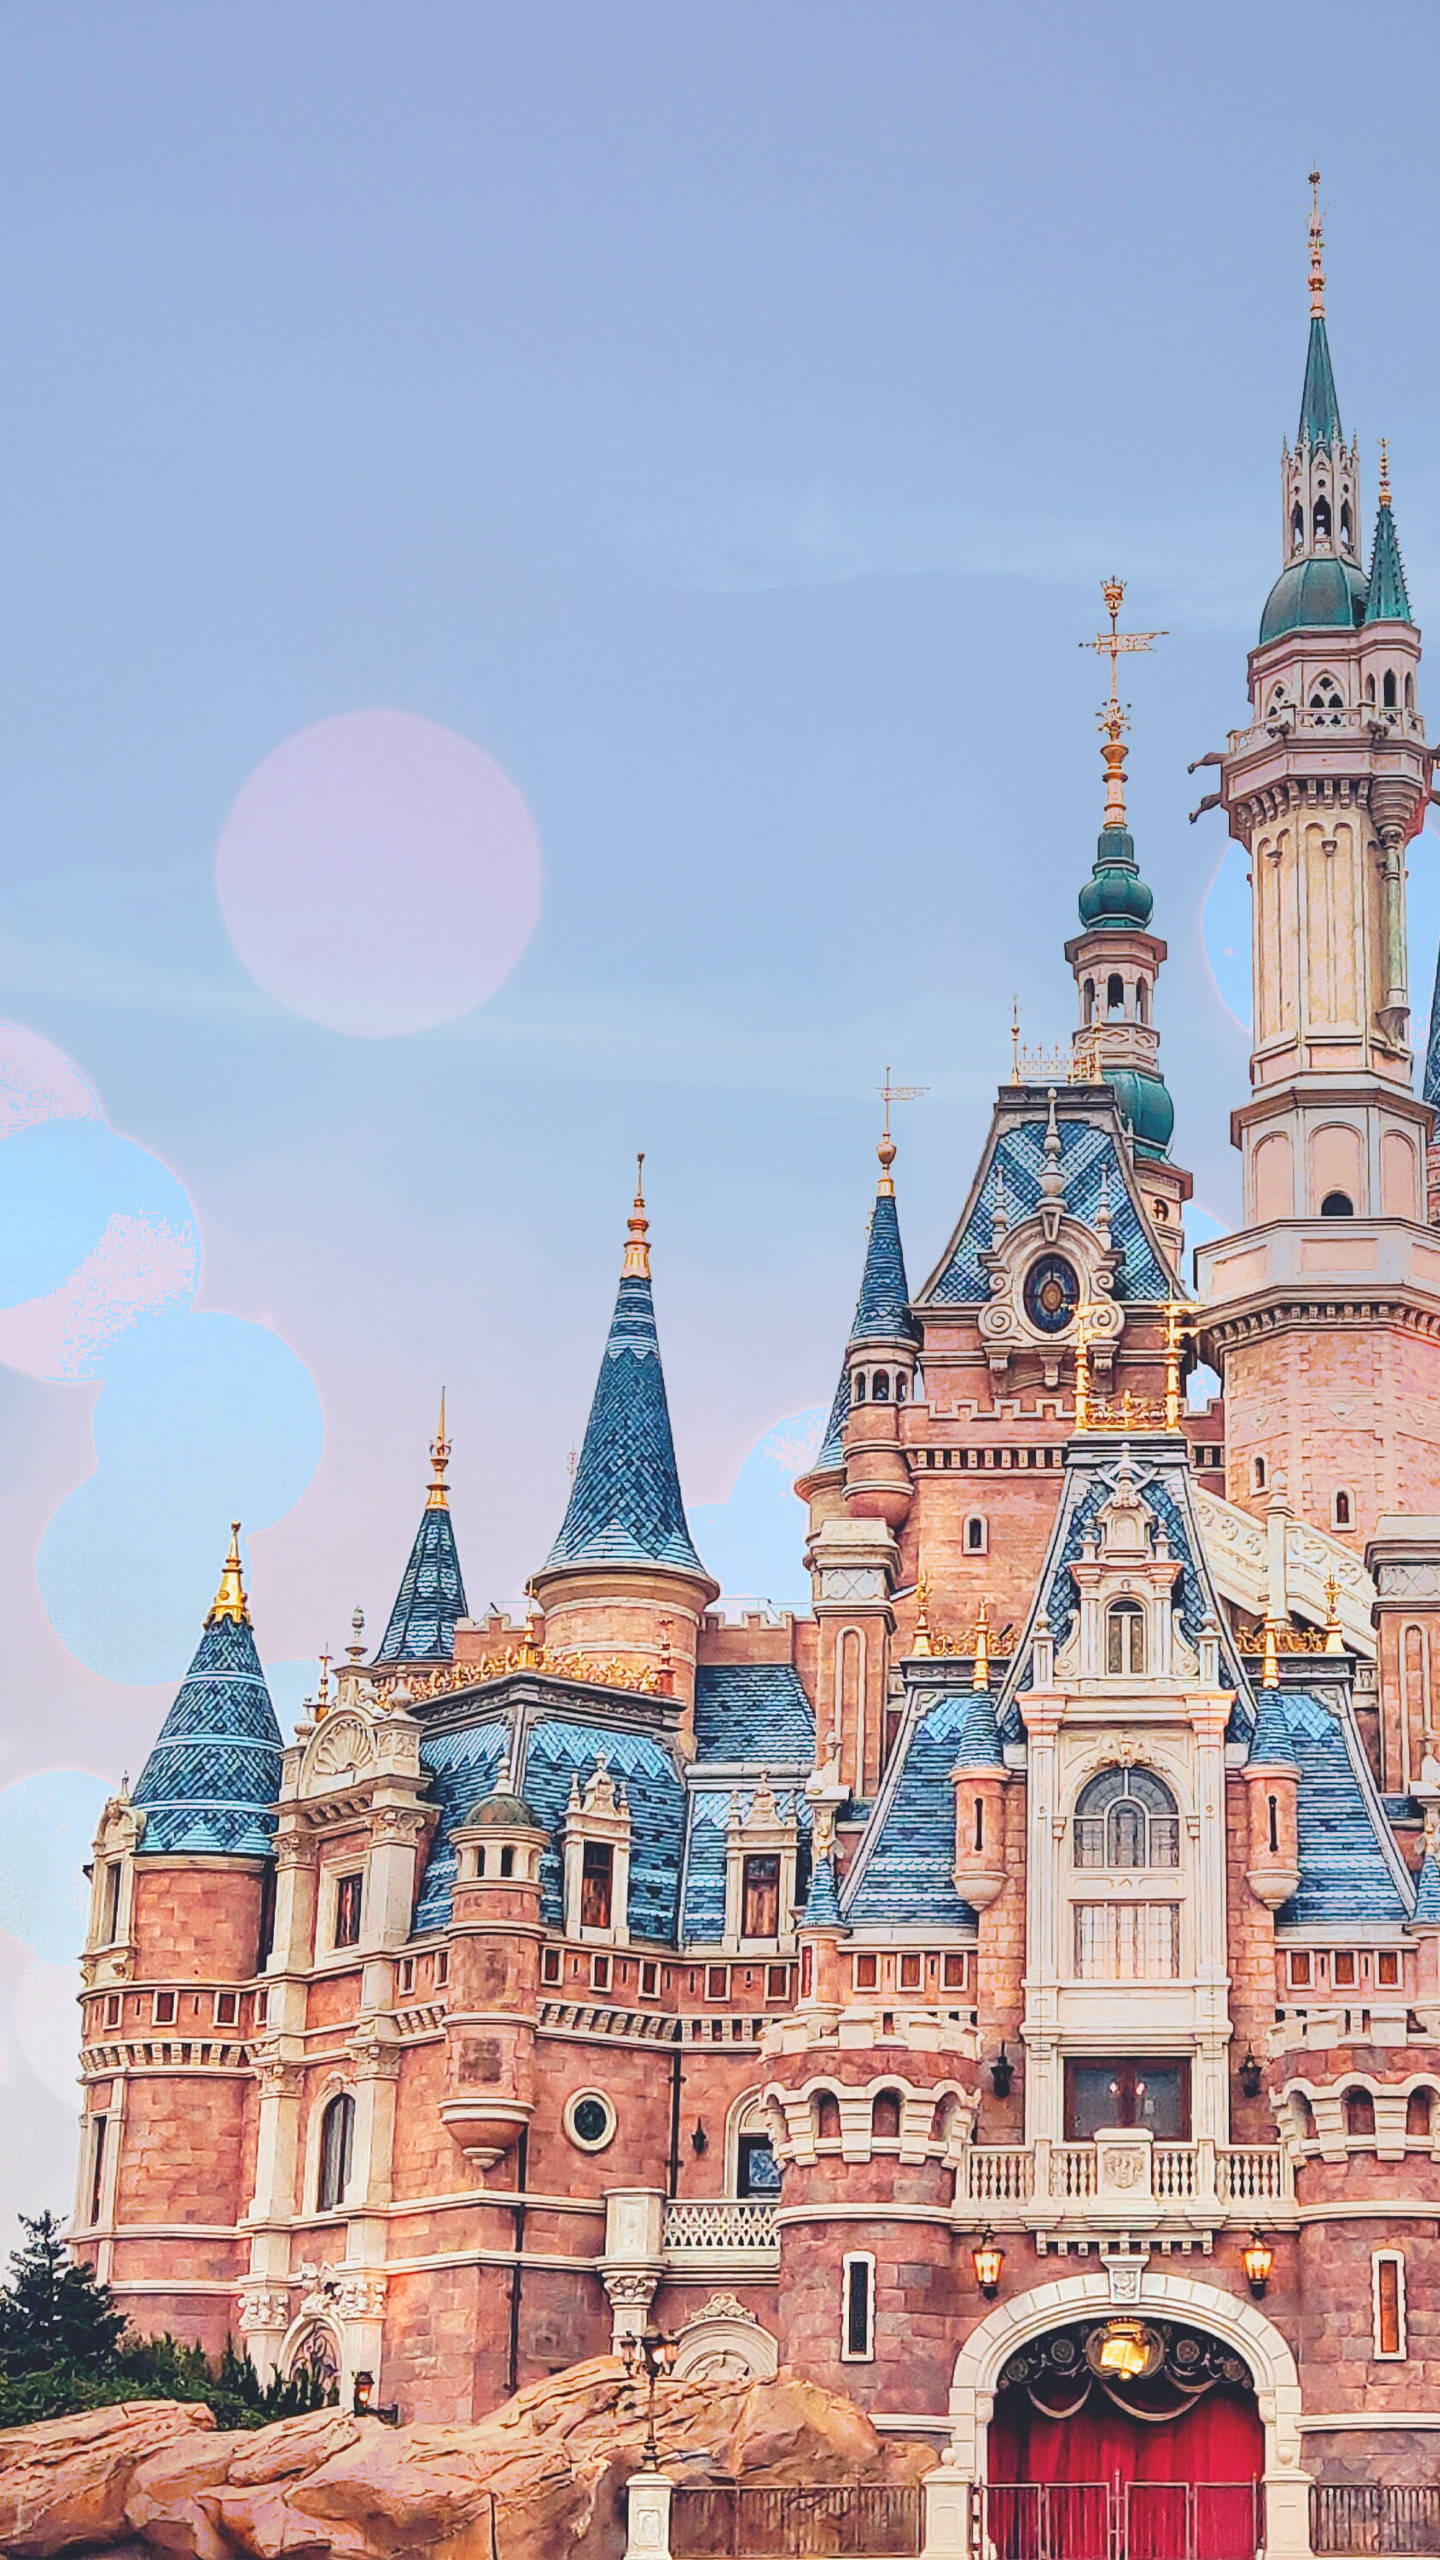 Enchanting View of Shanghai Disneyland Castle in Pink Wallpaper